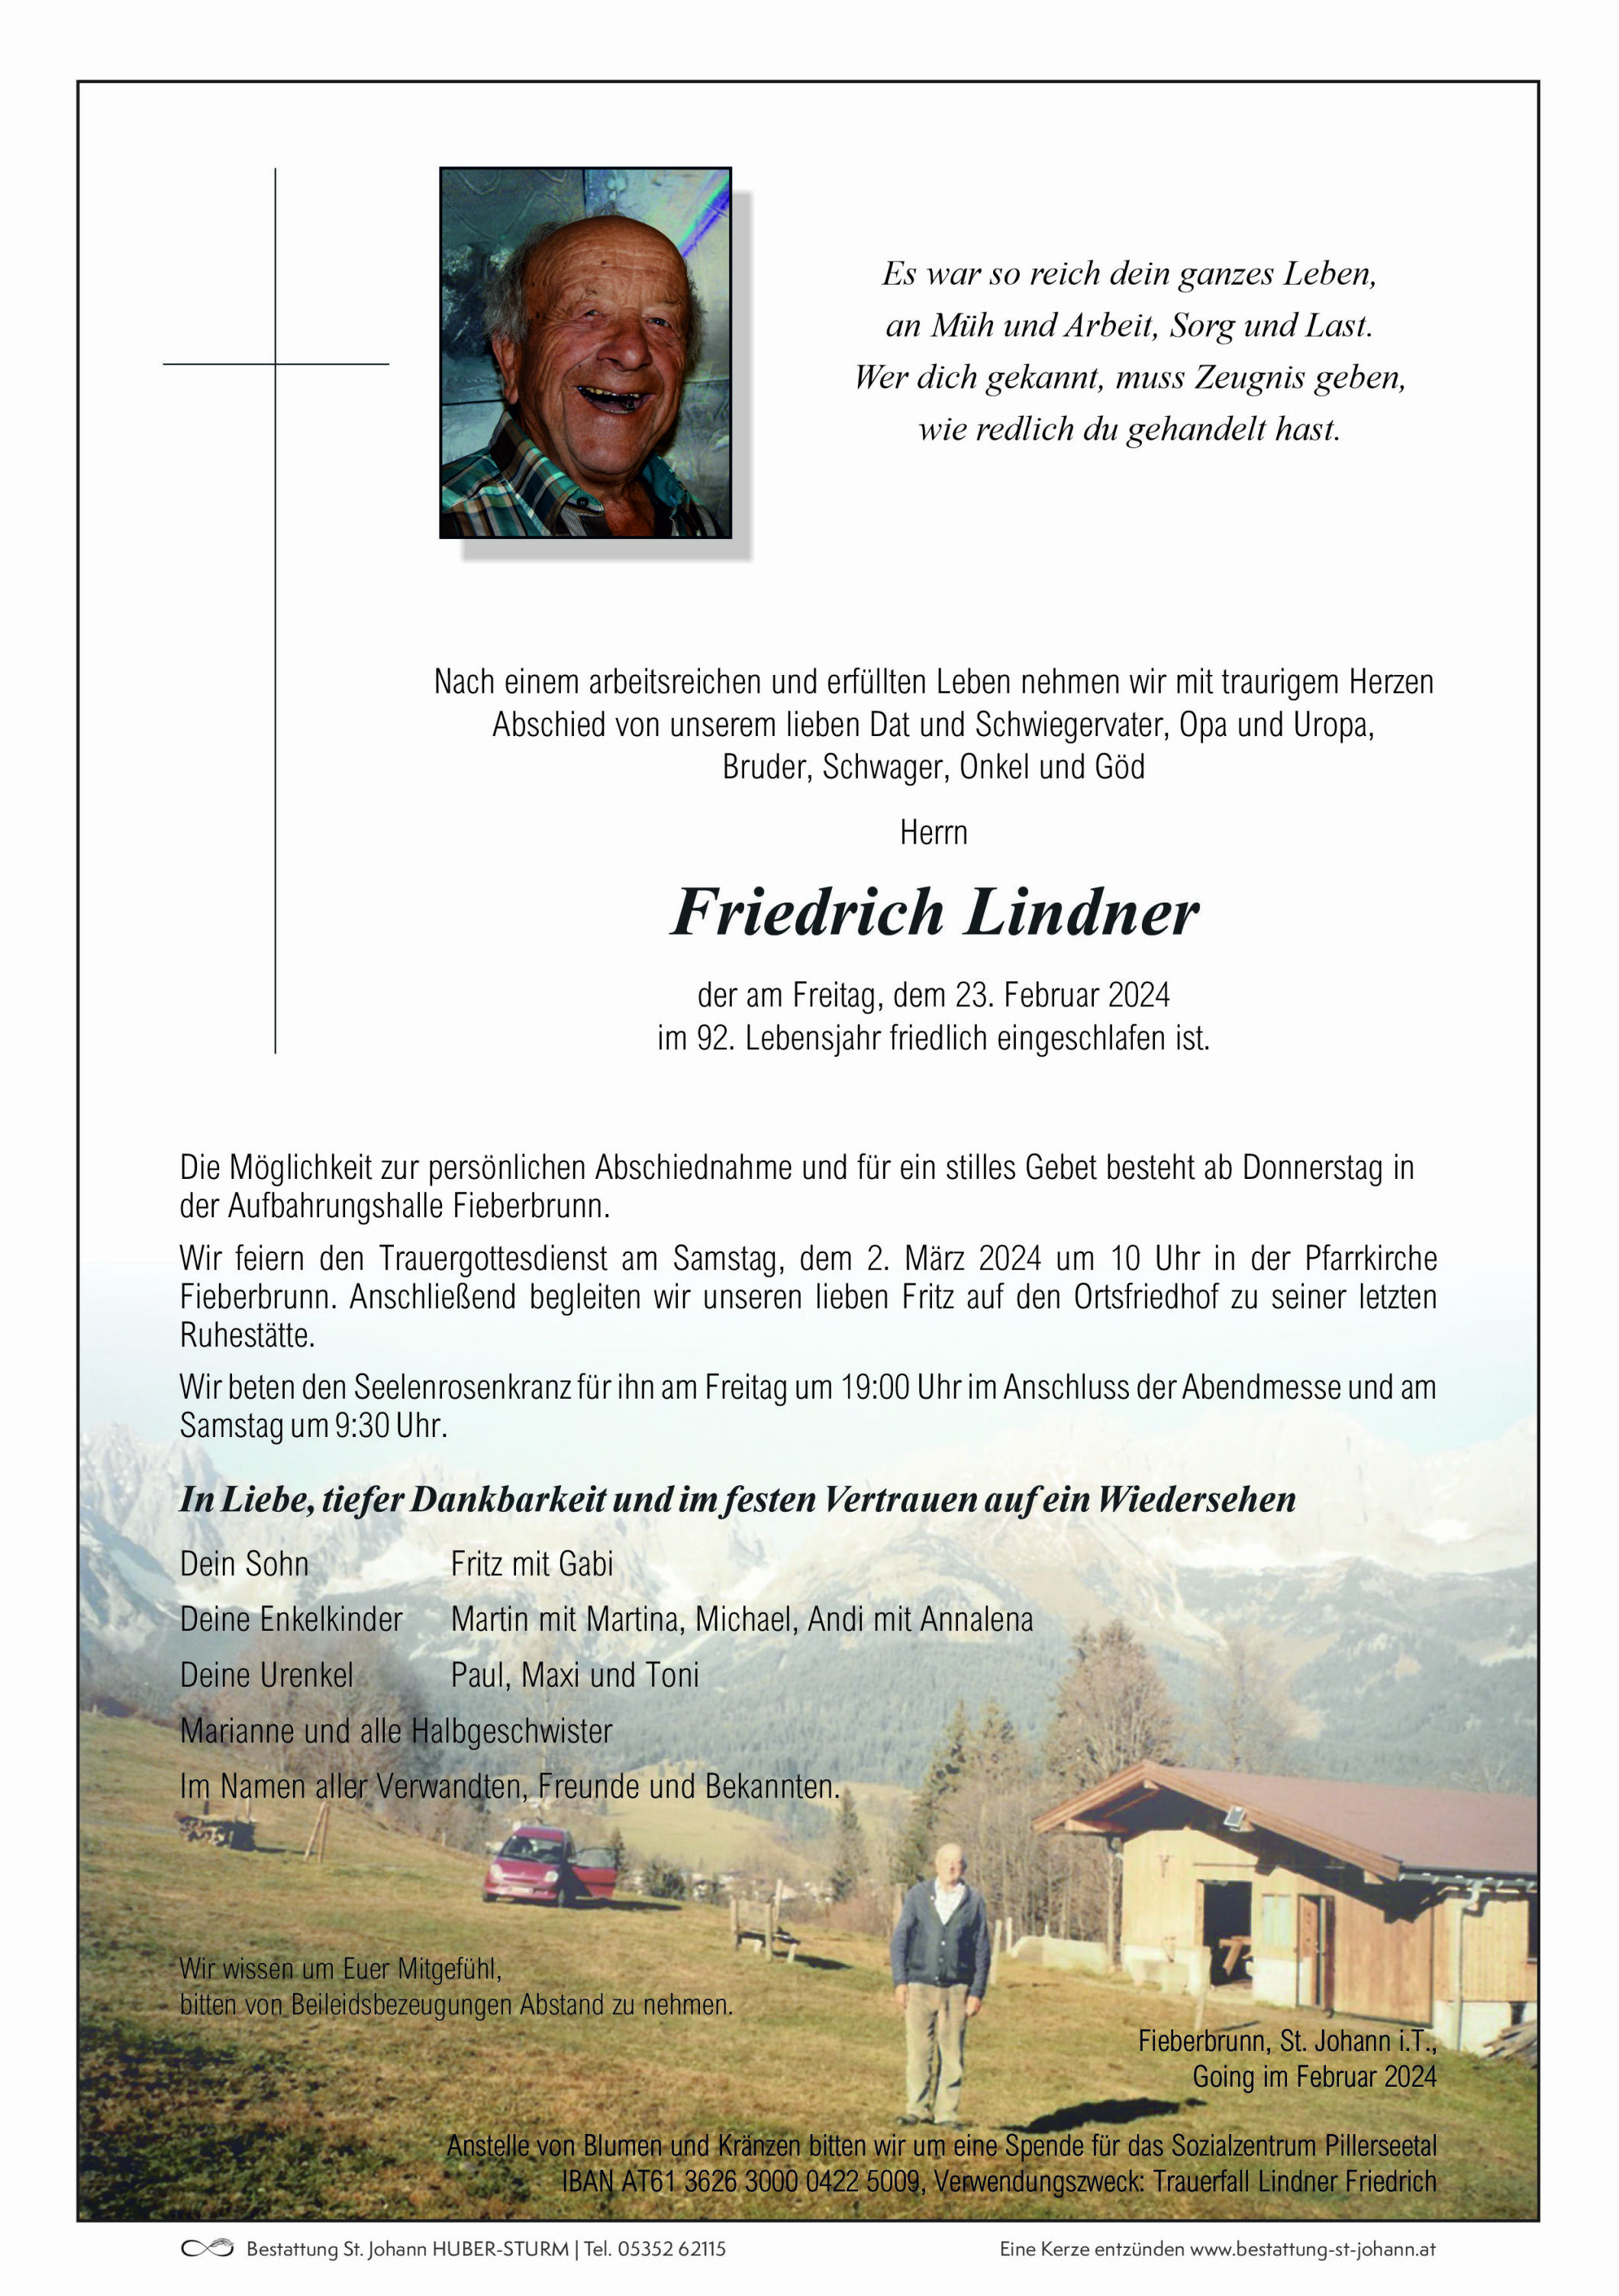 Friedrich Lindner